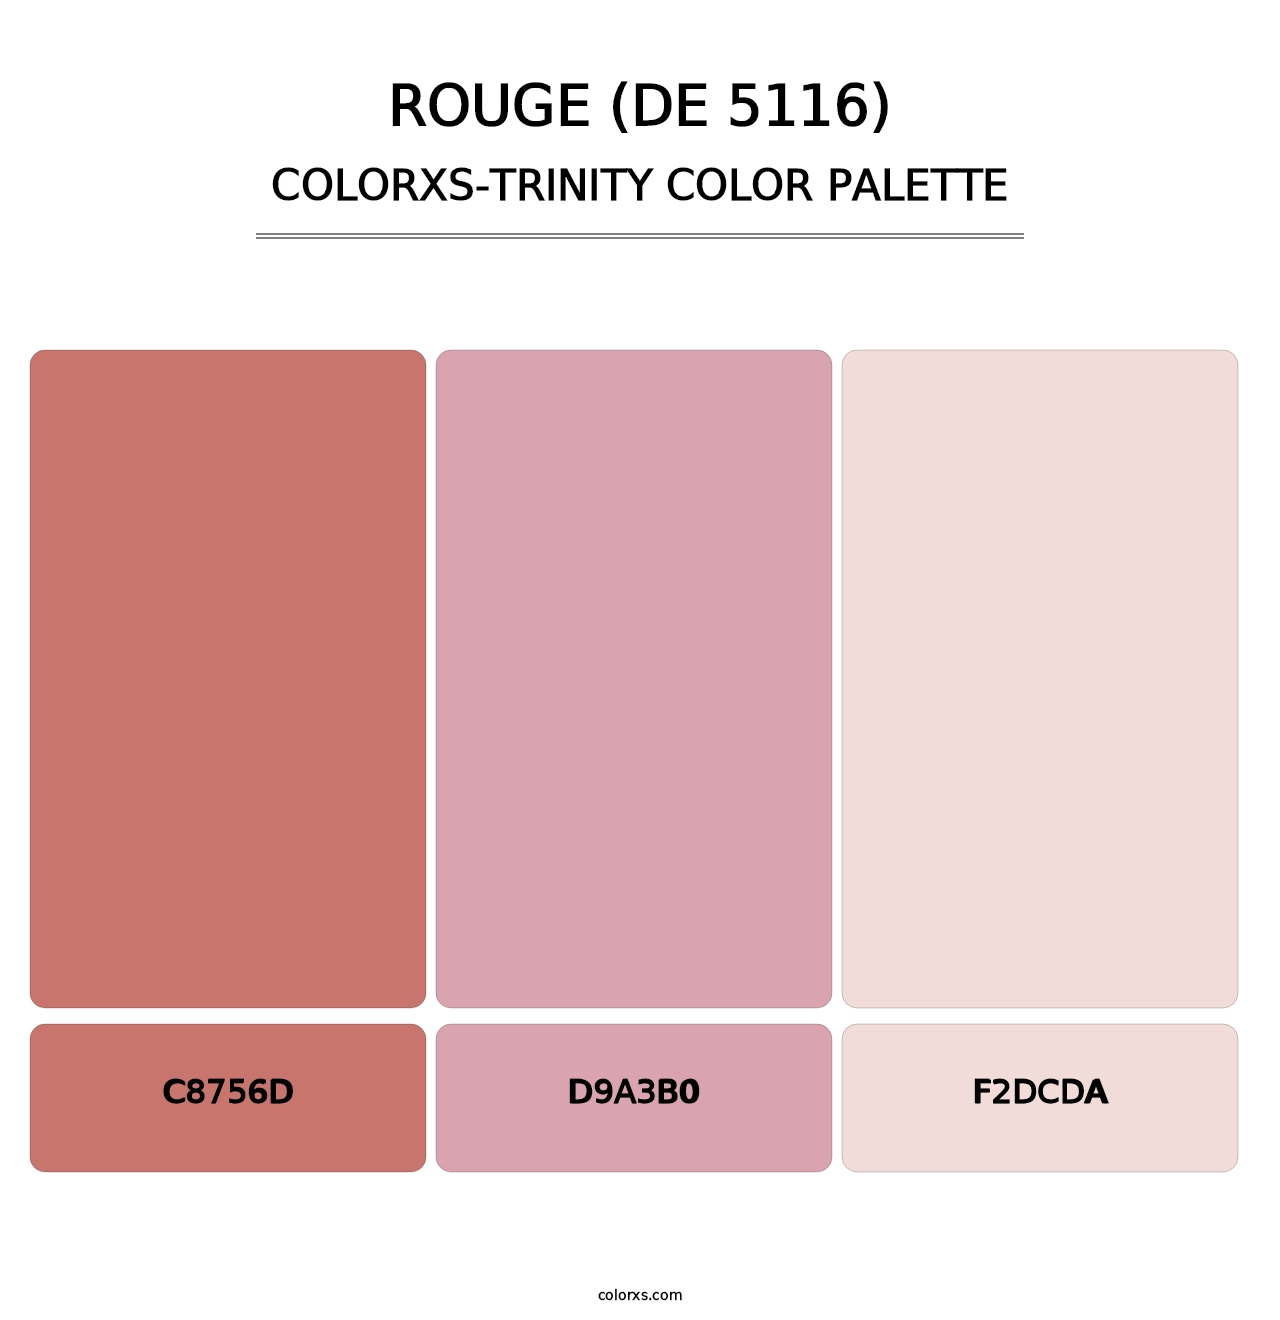 Rouge (DE 5116) - Colorxs Trinity Palette